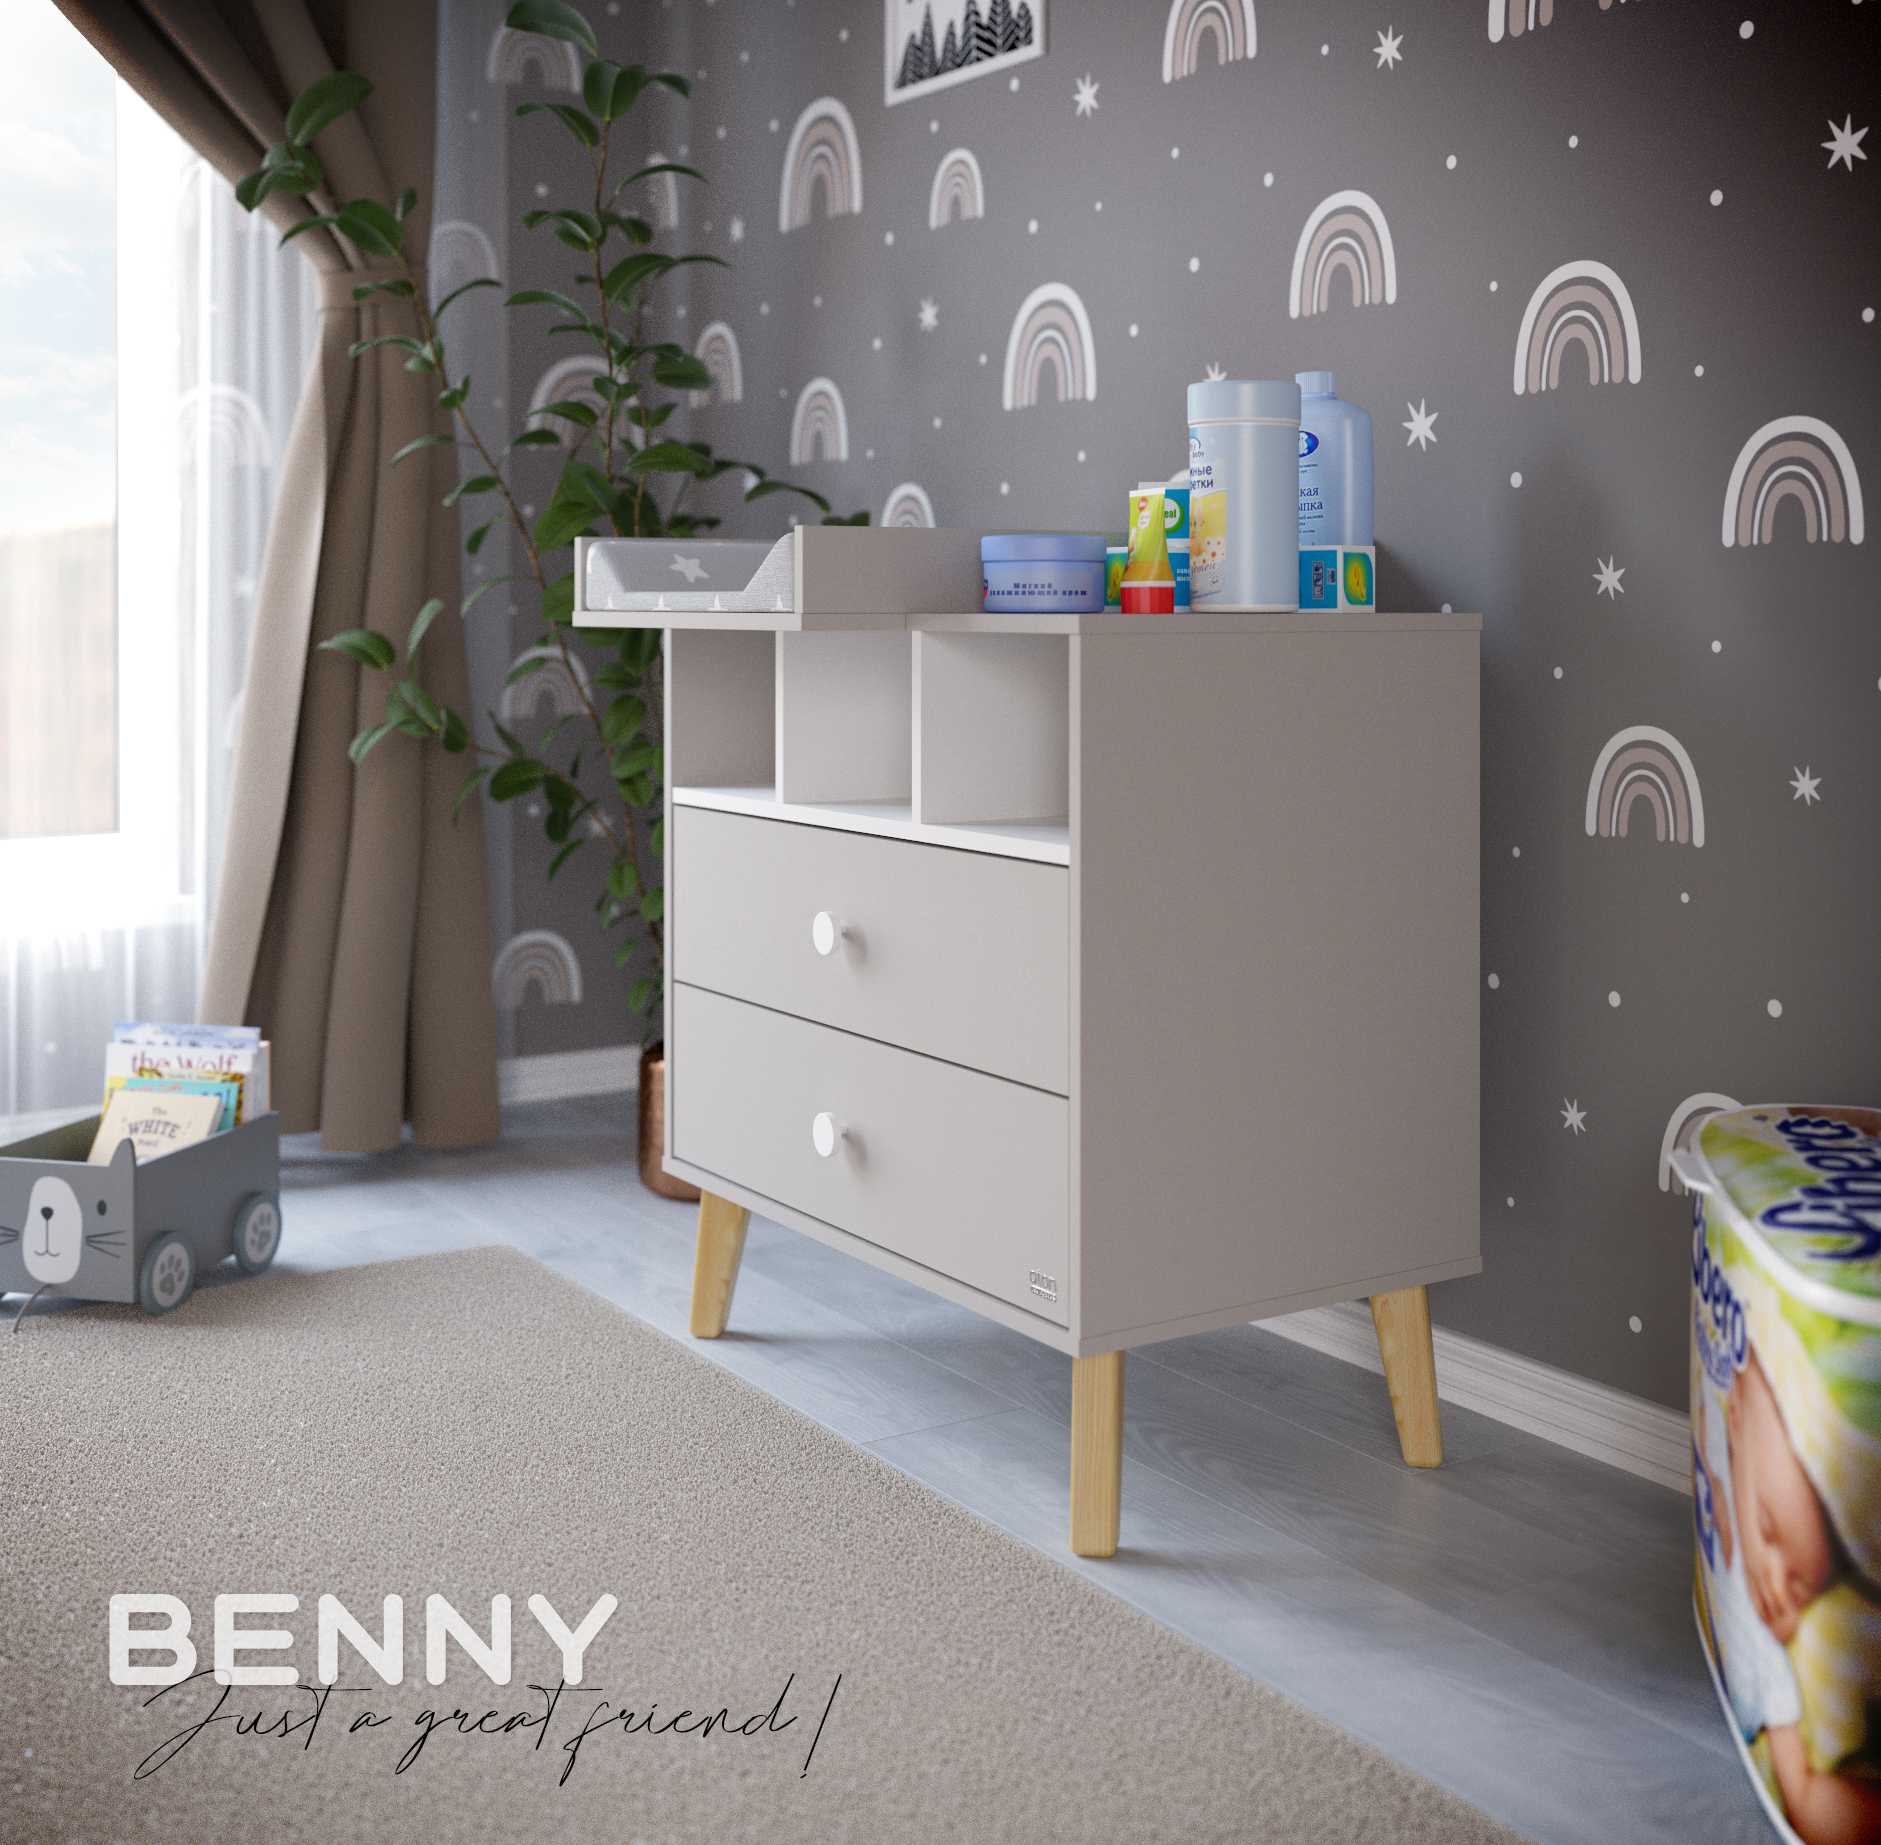 Пеленальный комод aton baby furniture Benny кашемир белый - фото 3